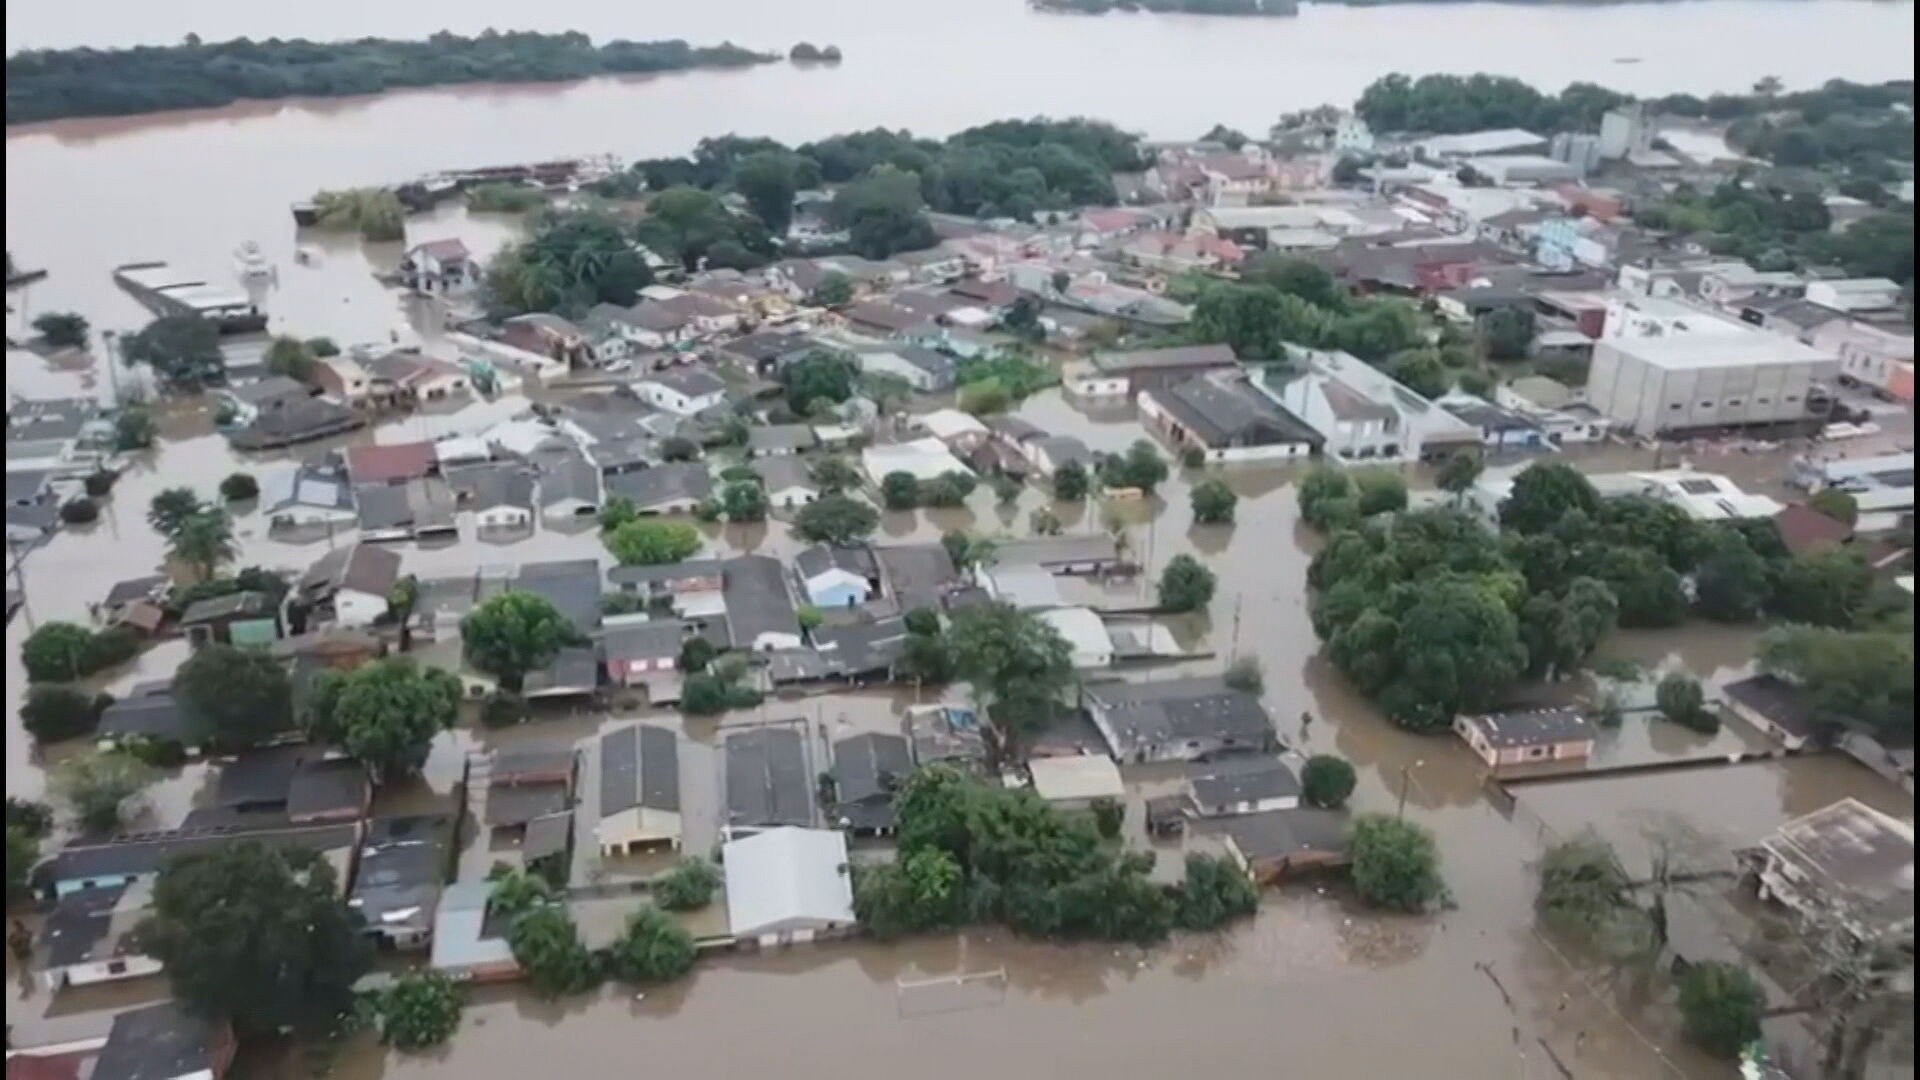 Bombeiros de Minas Gerais viajam ao Rio Grande do Sul para ajudar vítimas da chuva